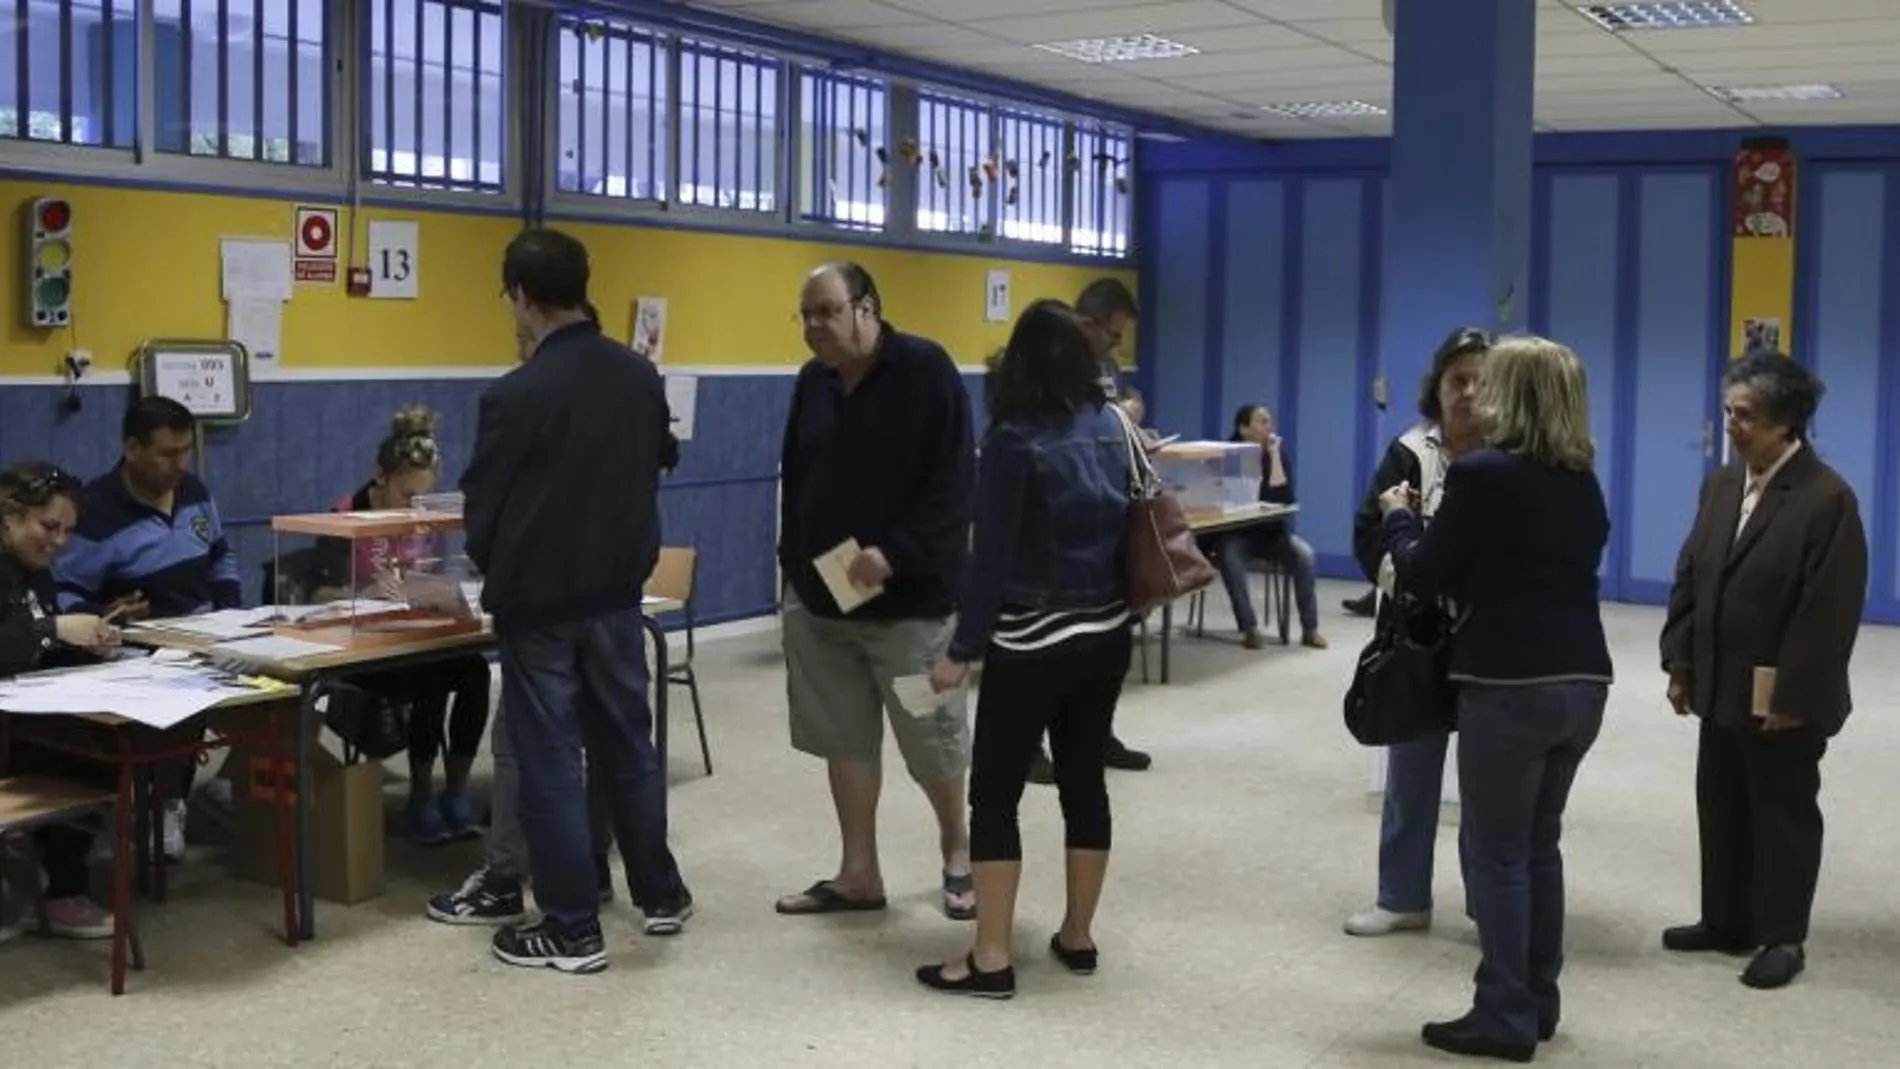 Varias personas hacen cola para depositar su voto en la apertura del colegio electoral en el CEIP Virgen del Portillo en Madrid, al inicio de la jornada electoral que se celebra hoy.